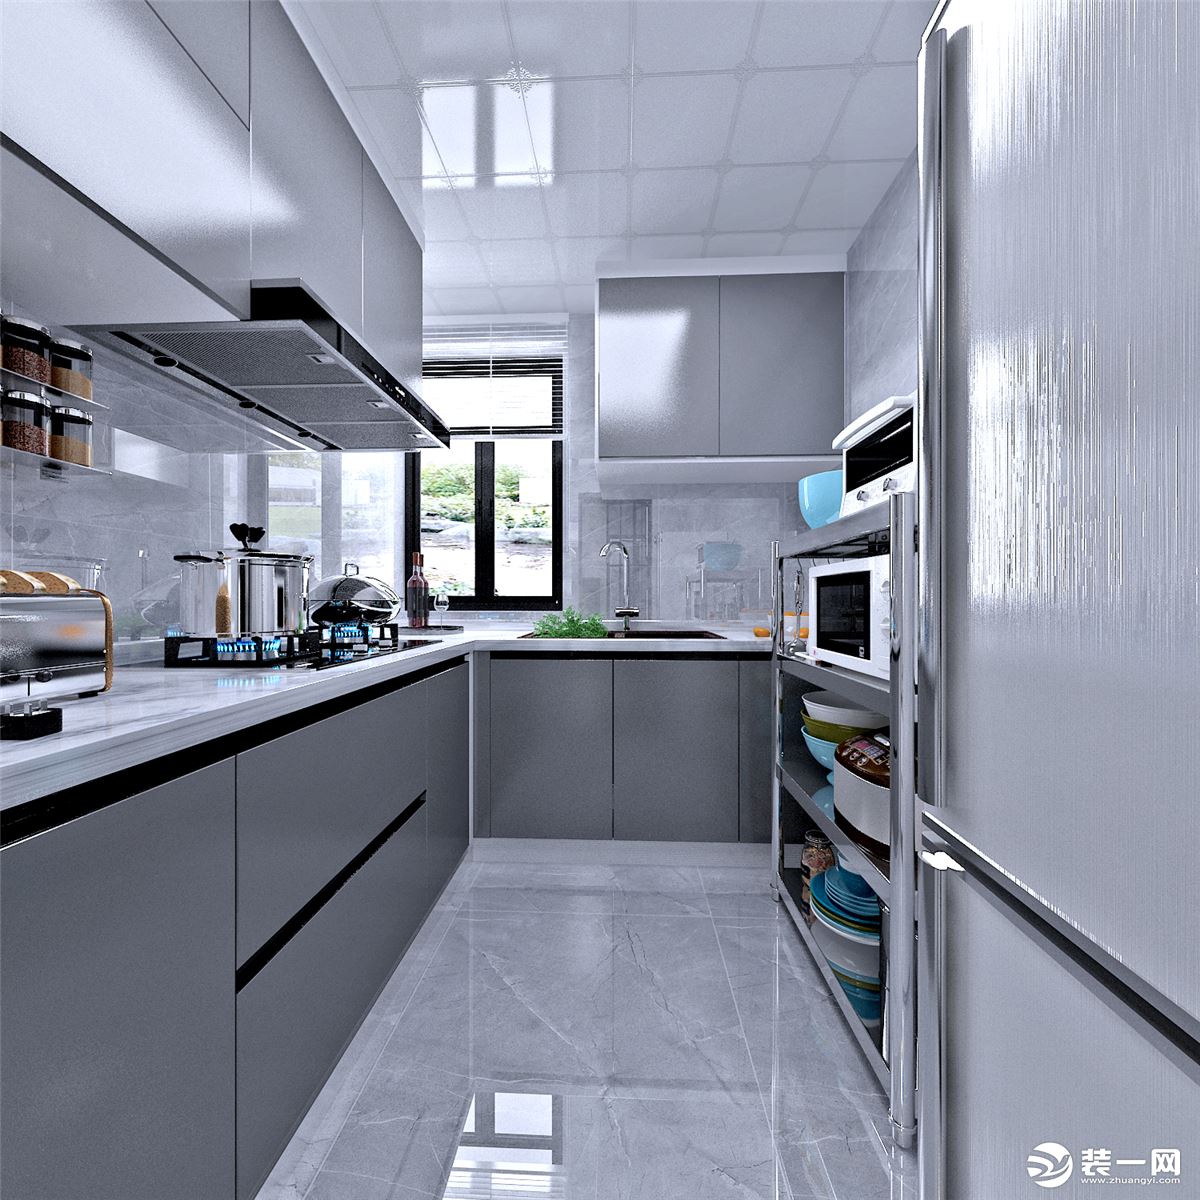 厨房L型的设计，最大化利用空间，增加储物，整体灰色的搭配，彰显的厨房的个性设计。